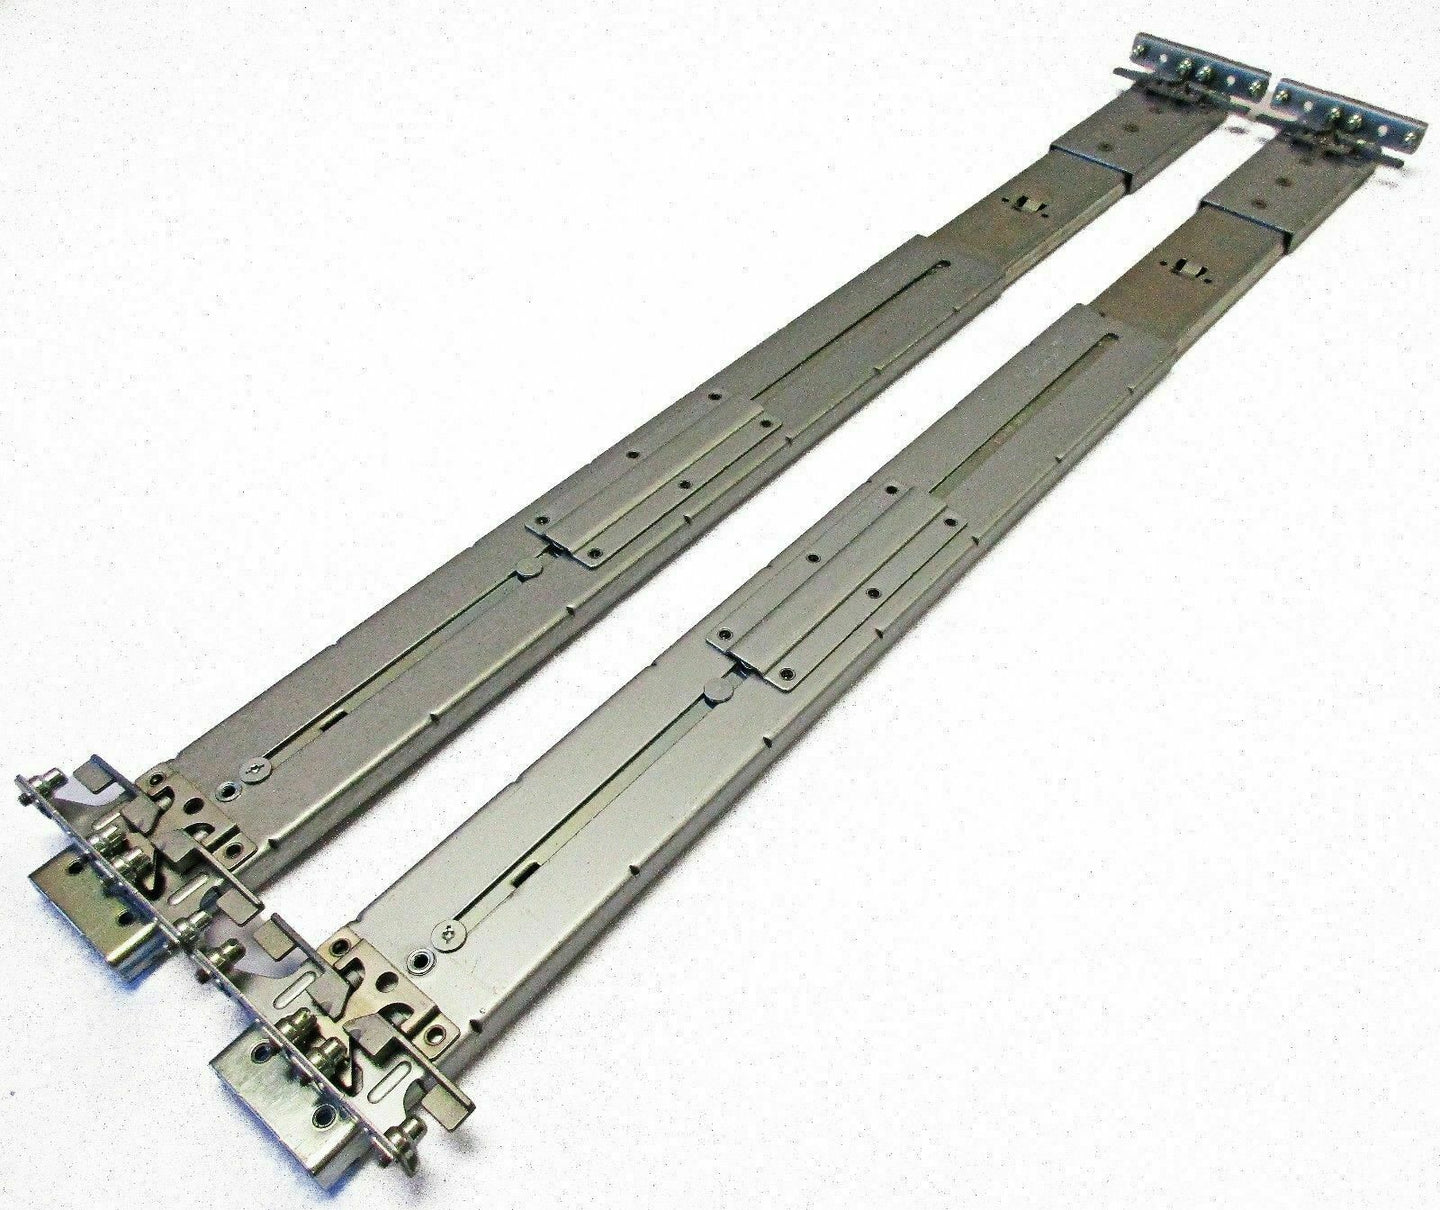 HP DL580 G5 G6 G7 Rack Mount Sliding Rail Kit Outer Rails 374516-001 or similar